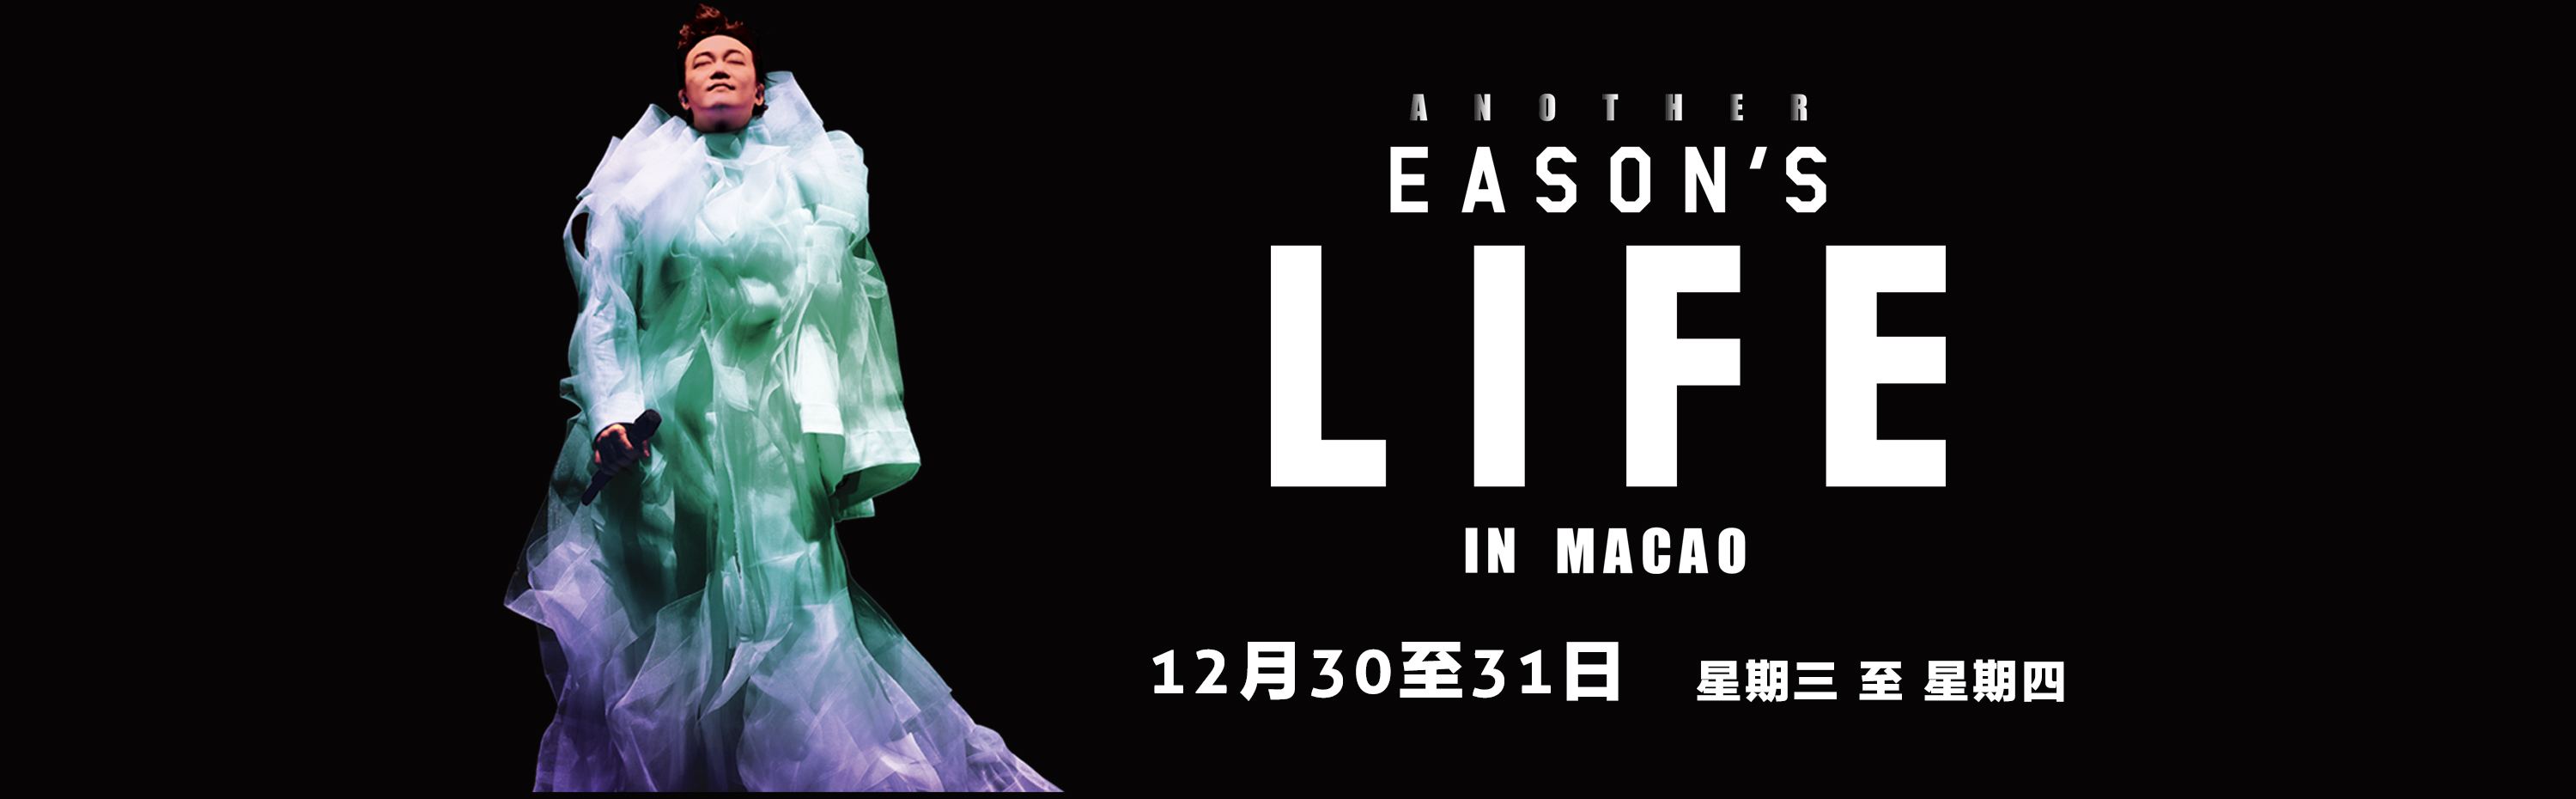 陳奕迅Another Eason's Life in Macao